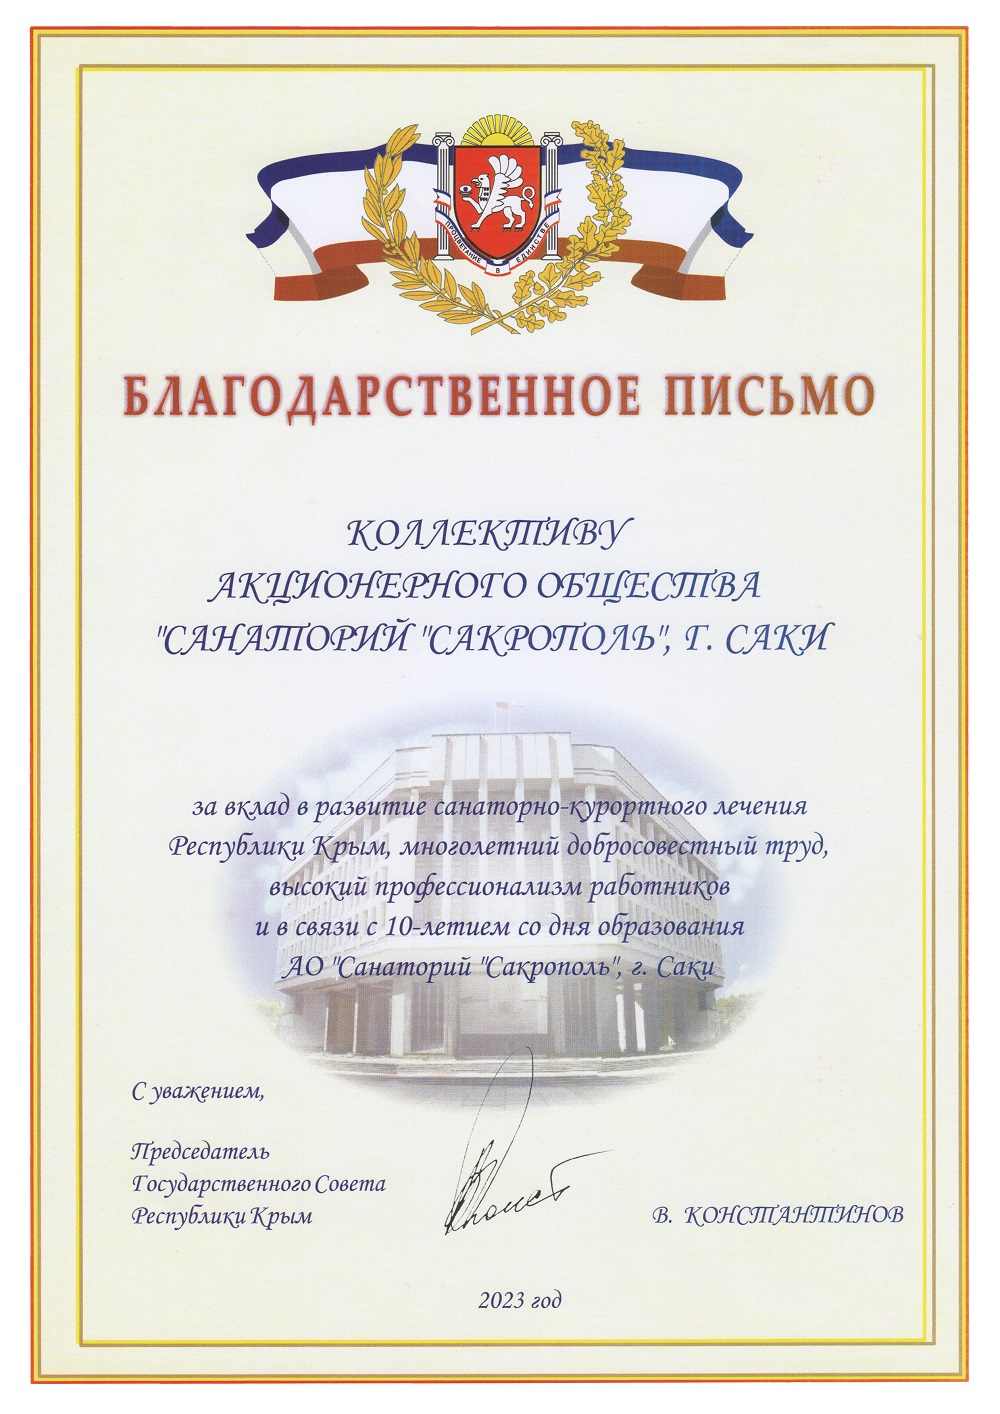 Благодарственное письмо от Председателя Государственного Совета Республики Крым